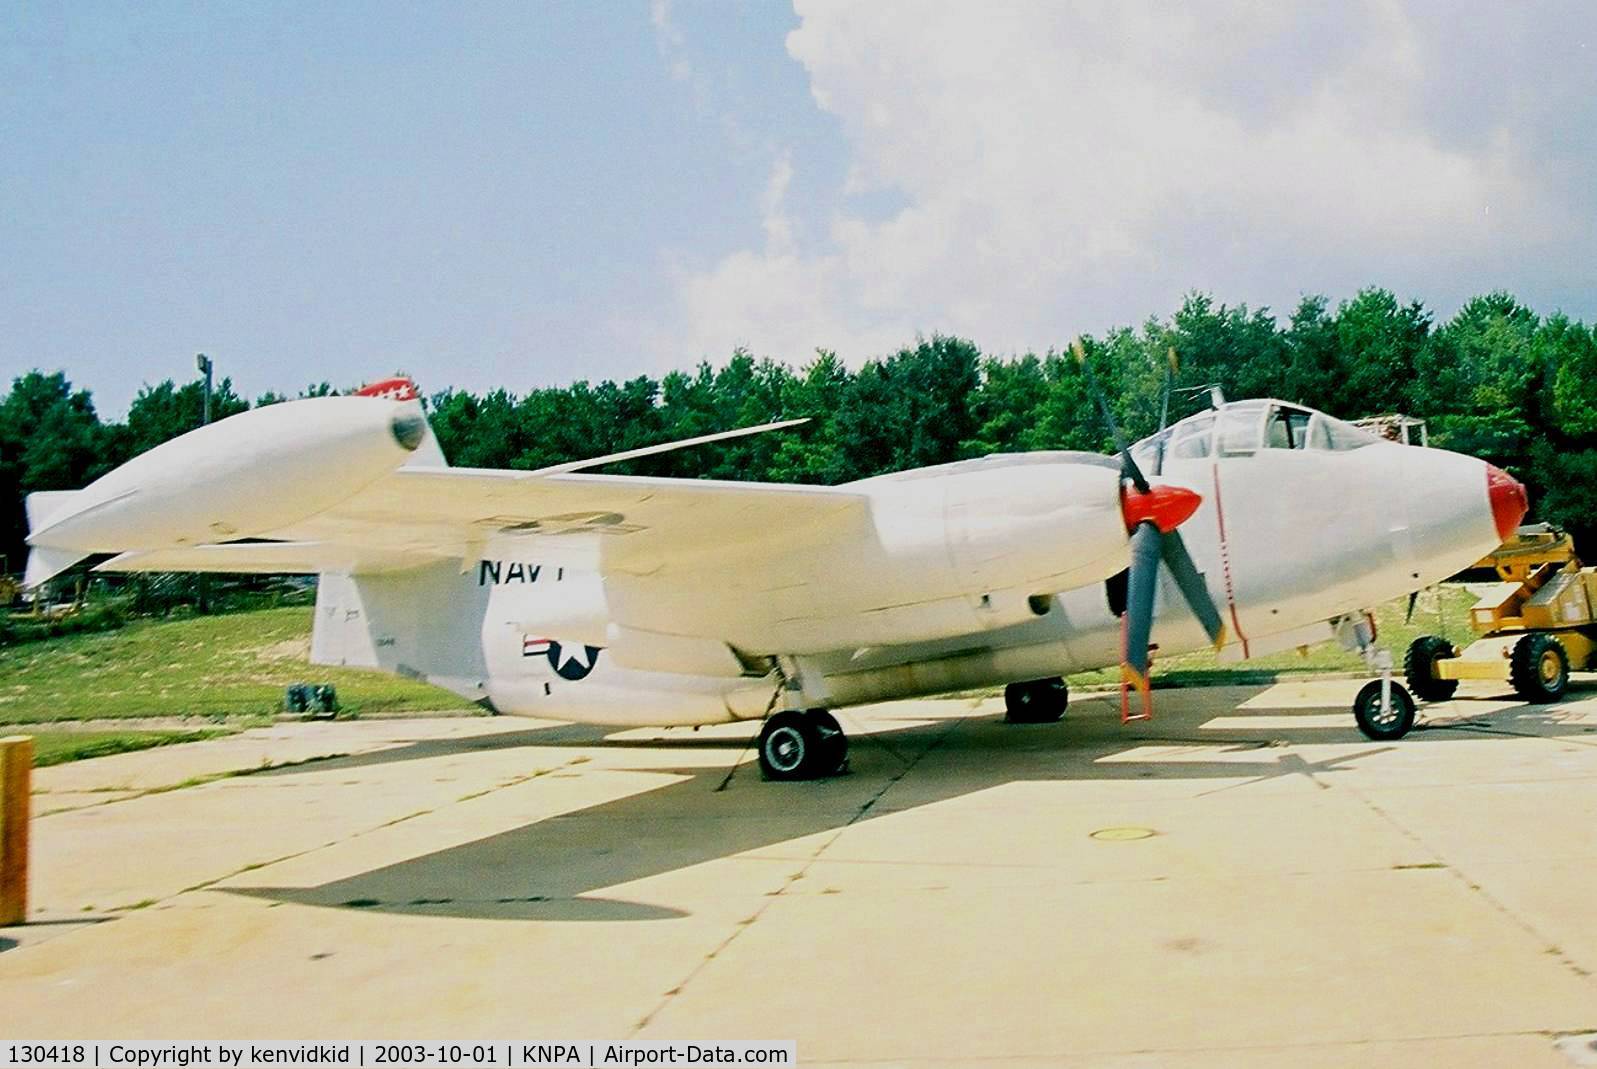 130418, North American AJ-2 Savage C/N 184-14, On display at the Museum of Naval Aviation, Pensacola.